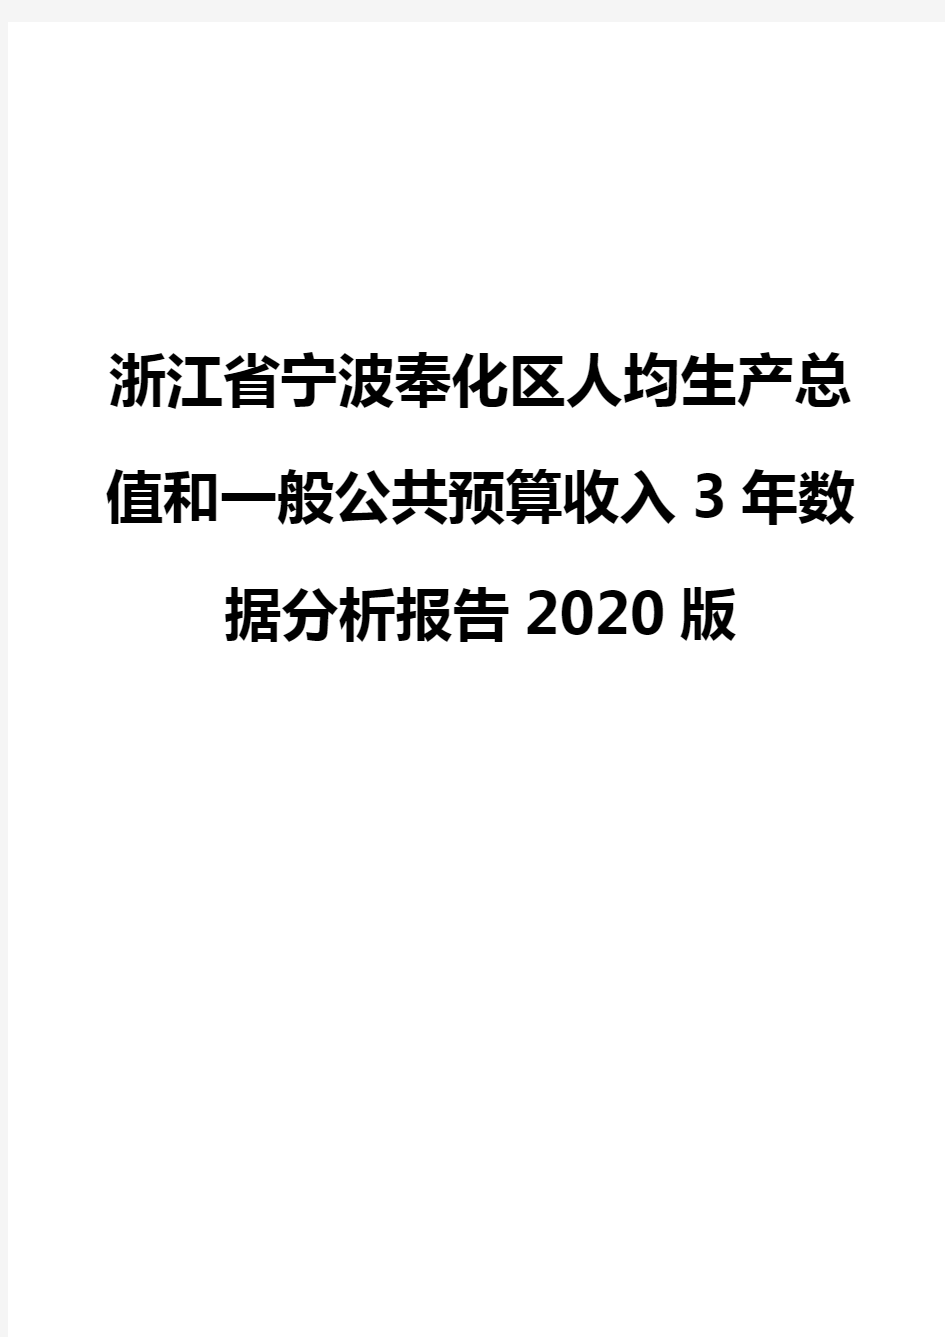 浙江省宁波奉化区人均生产总值和一般公共预算收入3年数据分析报告2020版